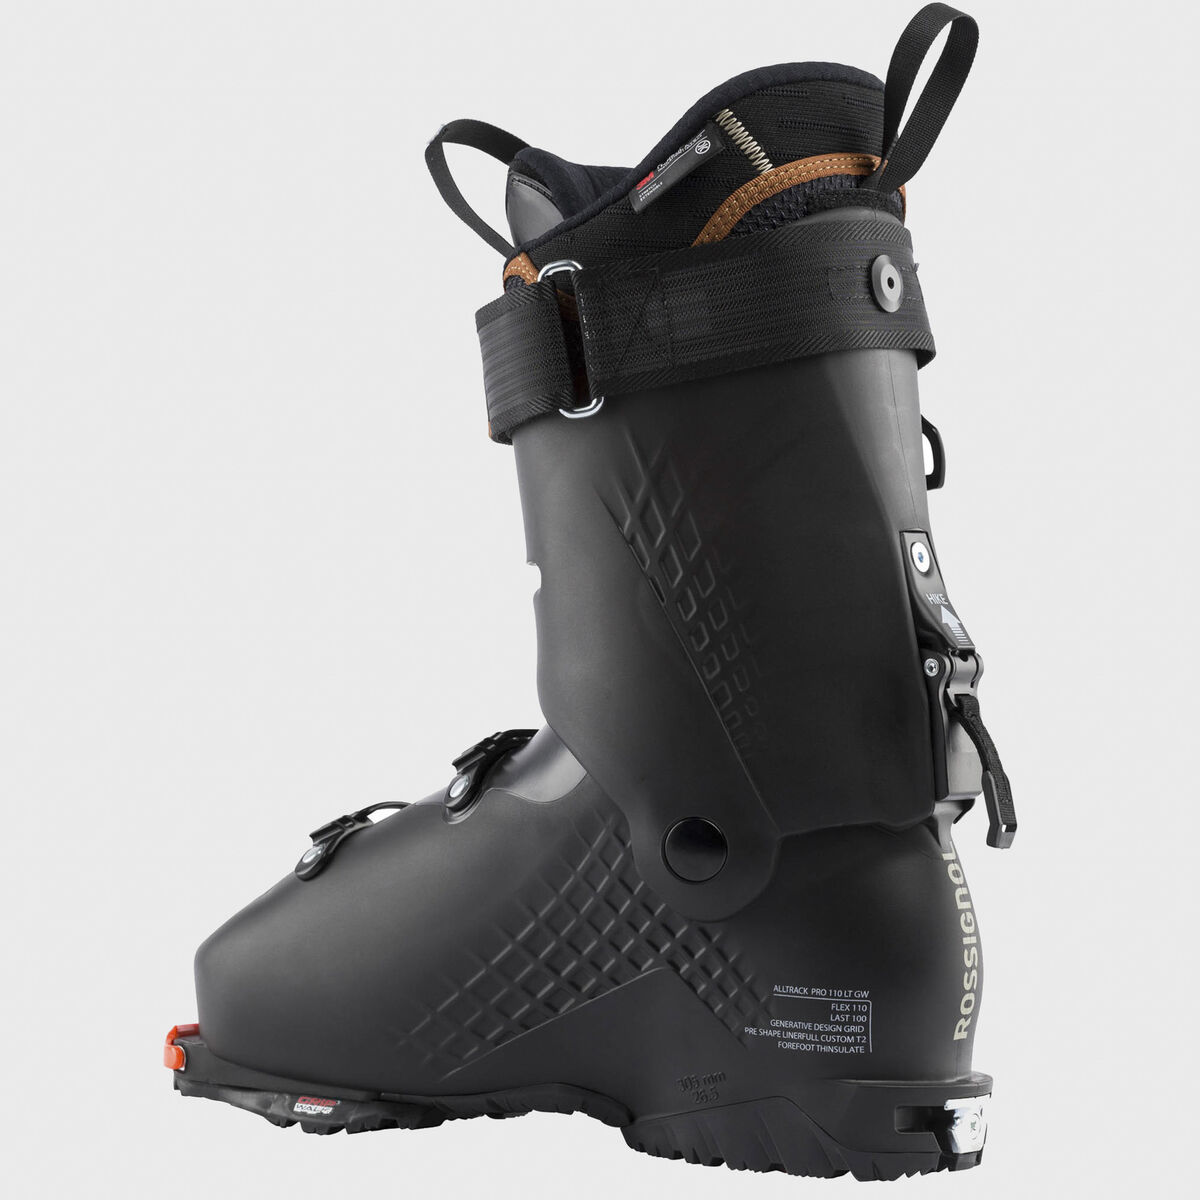 Men's Free Touring Ski Boots Alltrack Pro 110 LT